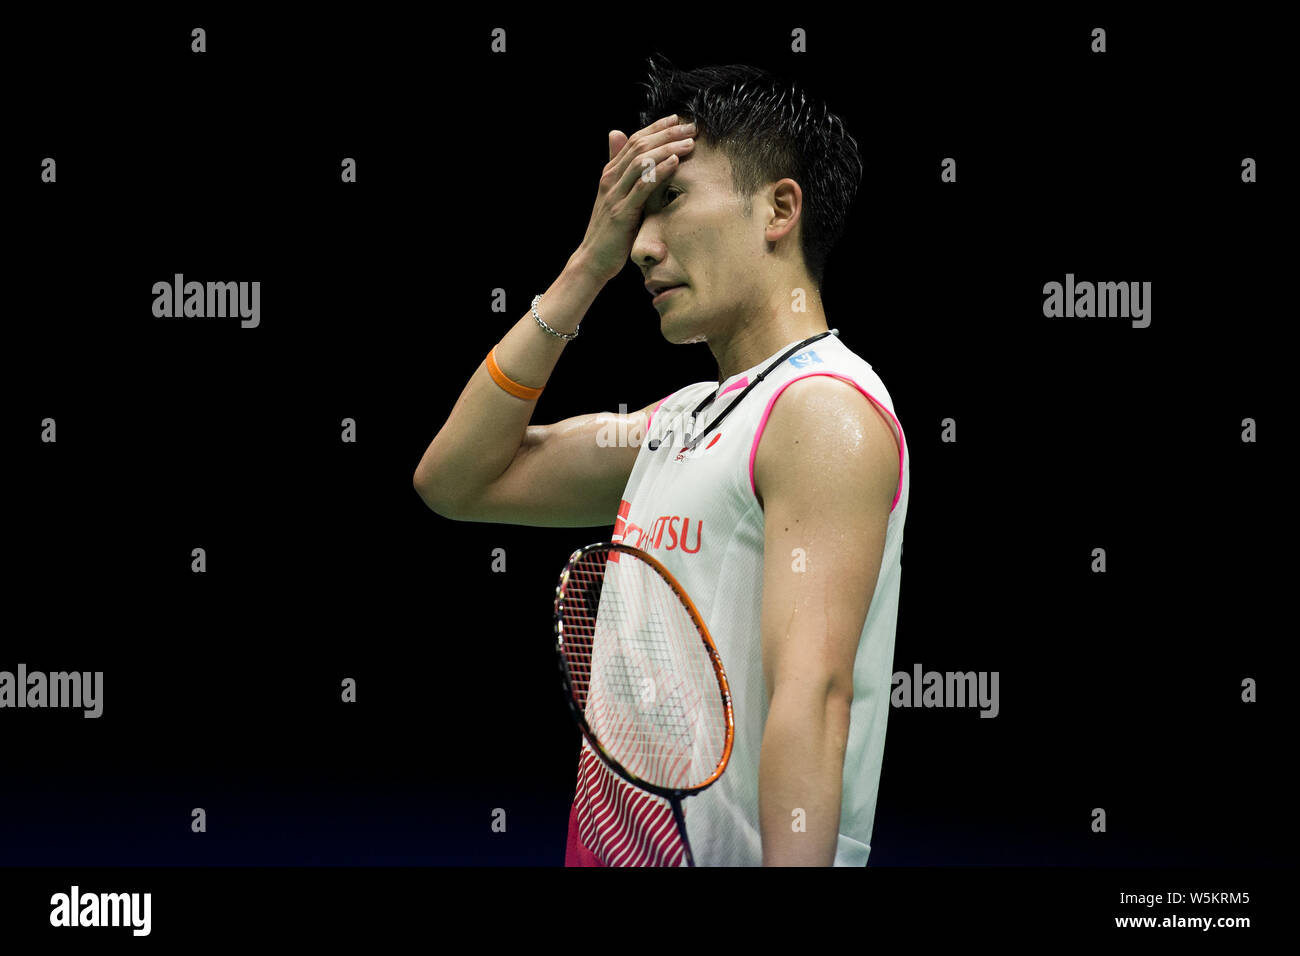 Kento Momota von Japan feiert nach dem Sieg über Shi Yuqi von China in ihrem letzten Spiel von singles Männer während der 2019 Badminton Asien Meisterschaften Stockfoto